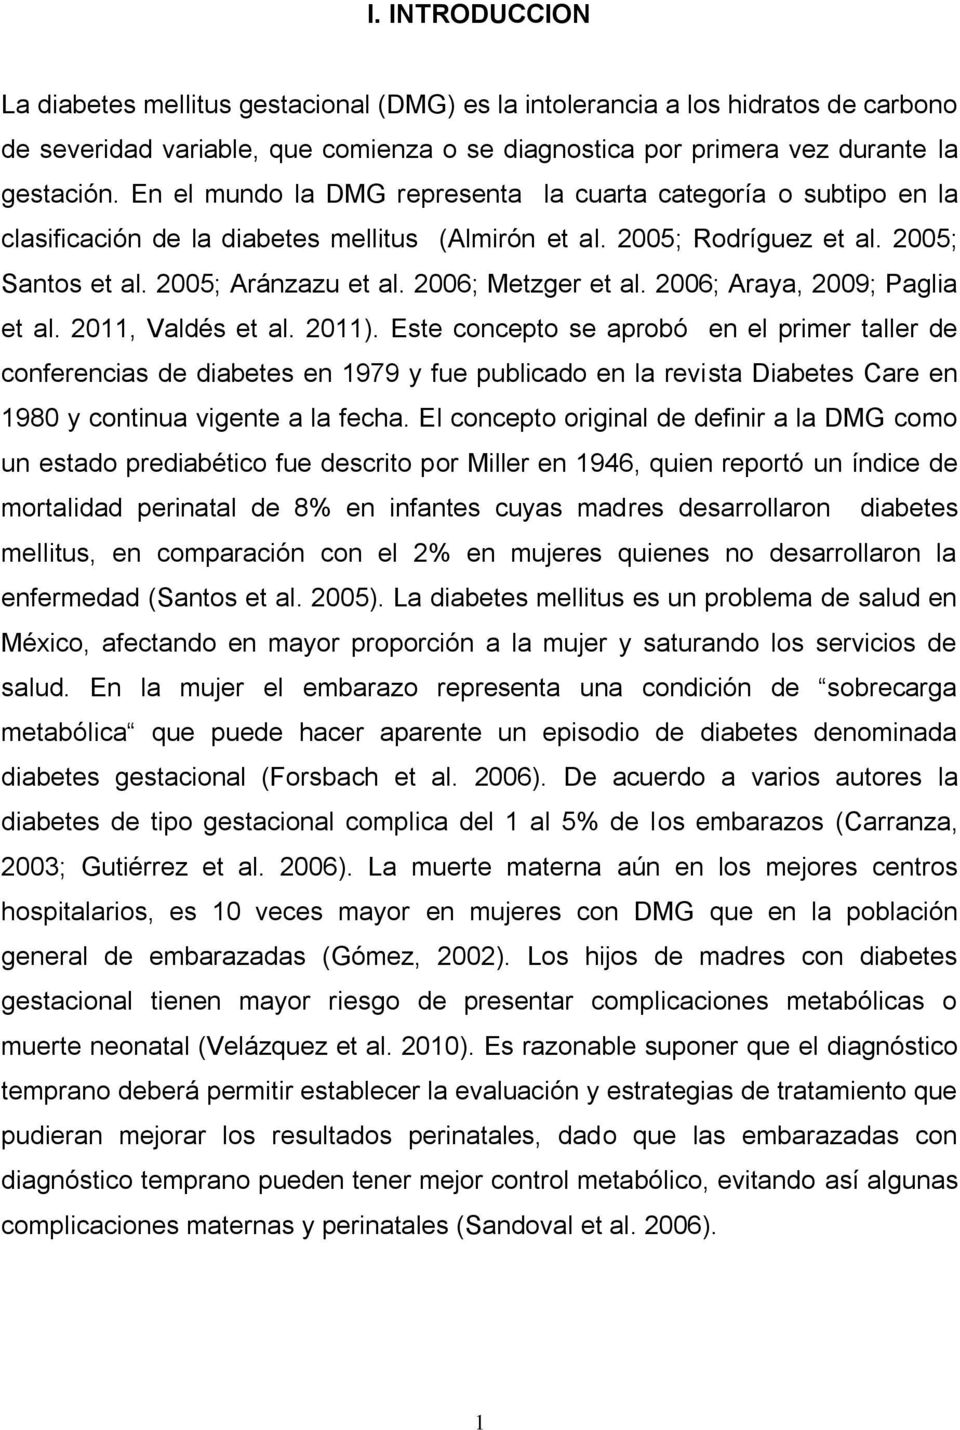 2006; Metzger et al. 2006; Araya, 2009; Paglia et al. 2011, Valdés et al. 2011).